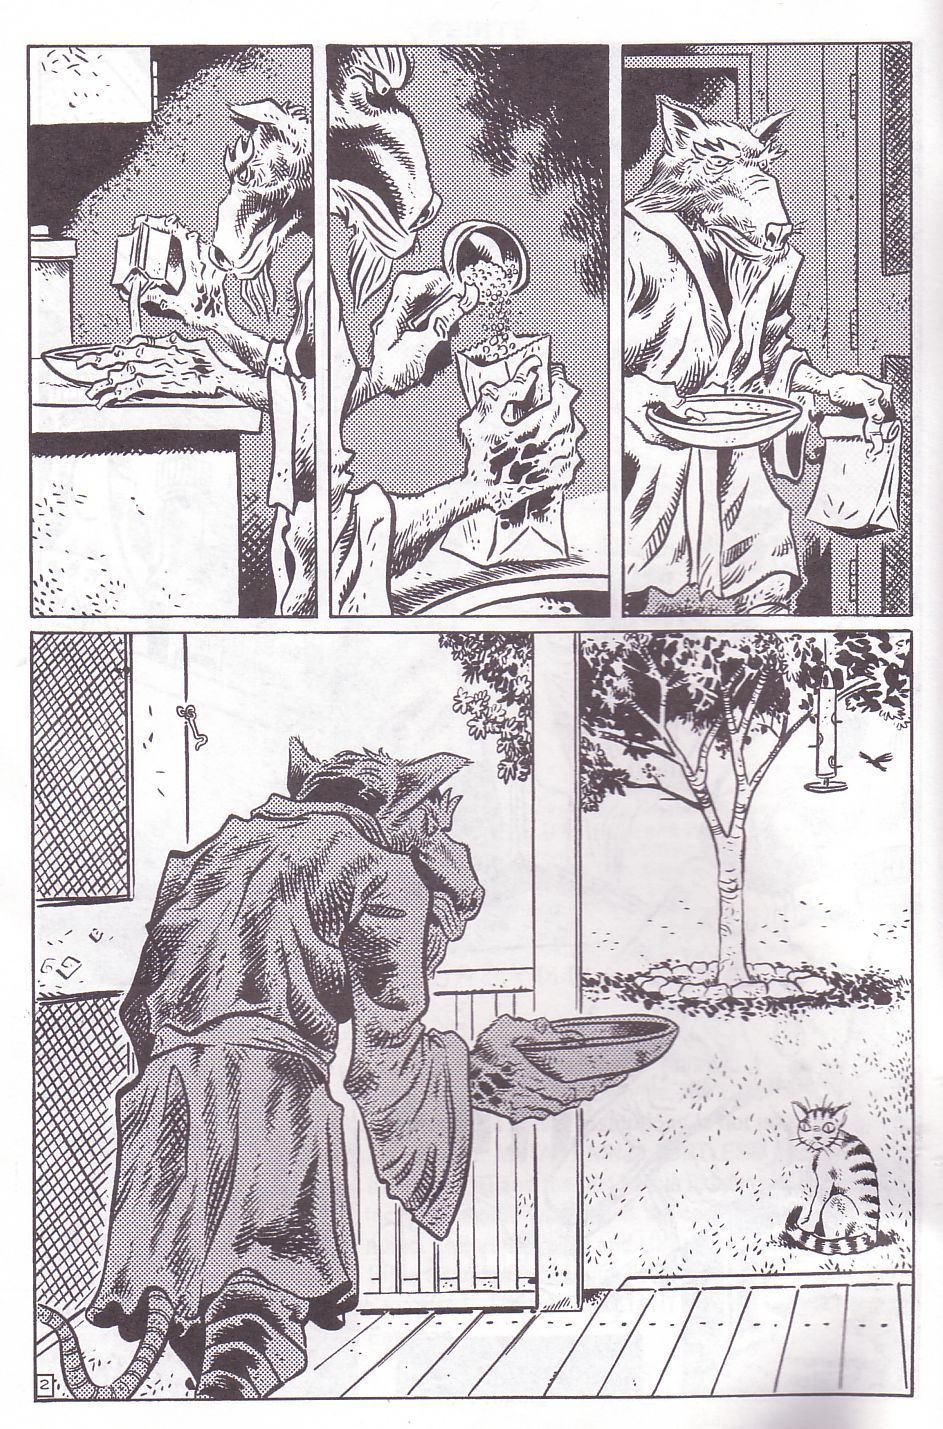 TMNT: Teenage Mutant Ninja Turtles issue 10 - Page 5